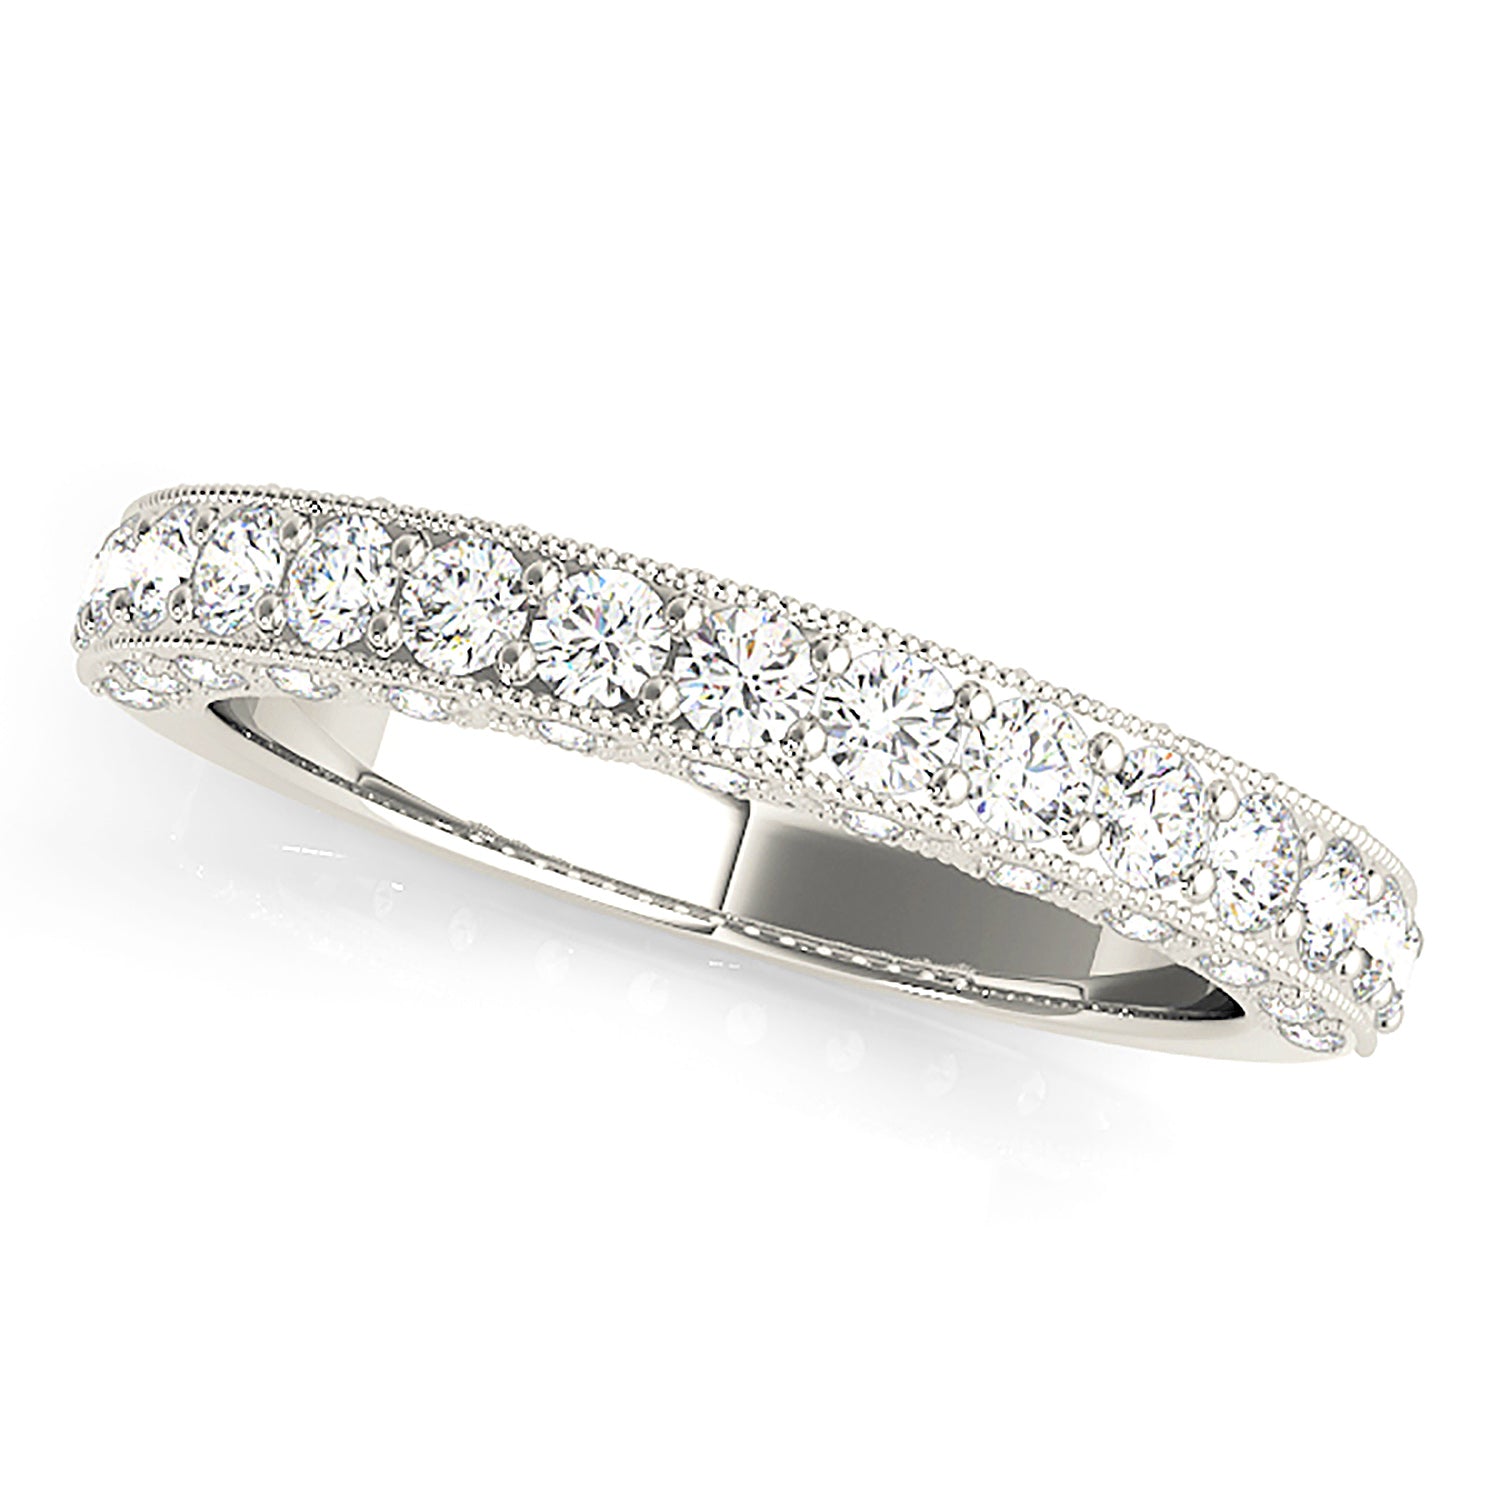 Diamond Wedding Band - 14K/18k Solid White Gold / Platinum | Prong Set Diamond Anniversary Ring | Milgrain Design-in 14K/18K White, Yellow, Rose Gold and Platinum - Christmas Jewelry Gift -VIRABYANI